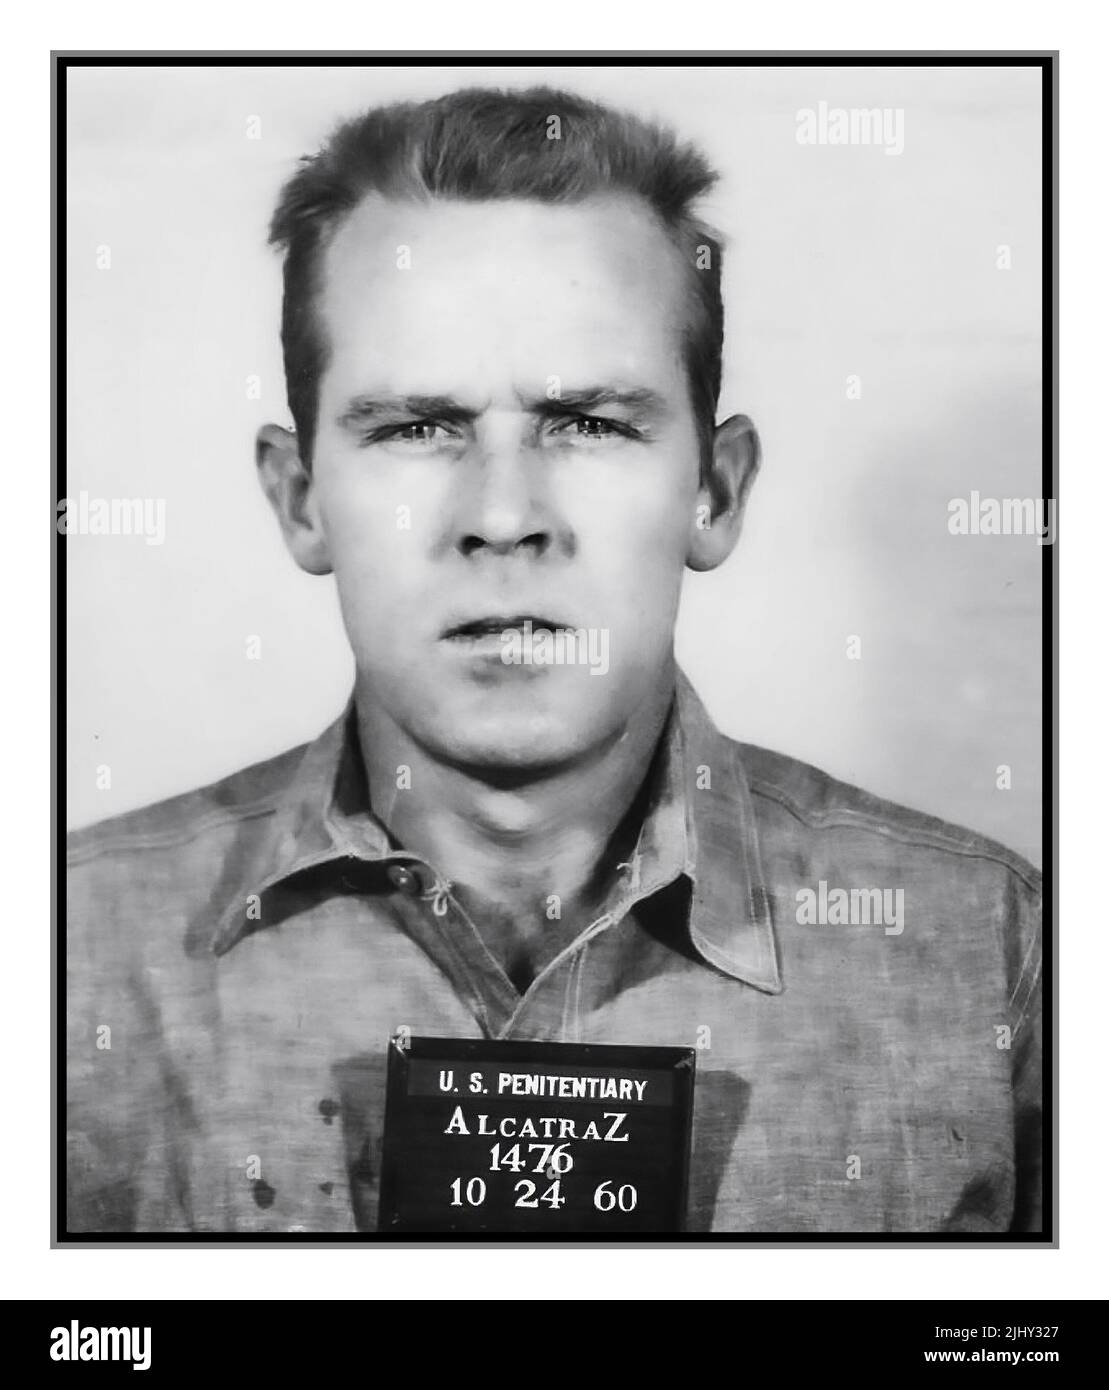 ALACATRAZ CARCERE MUGSHOT PRIGIONIERO John Anglin No 1476, famoso criminale statunitense per la fuga Alcatraz 1960 Alcatraz San Francisco California USA Foto Stock